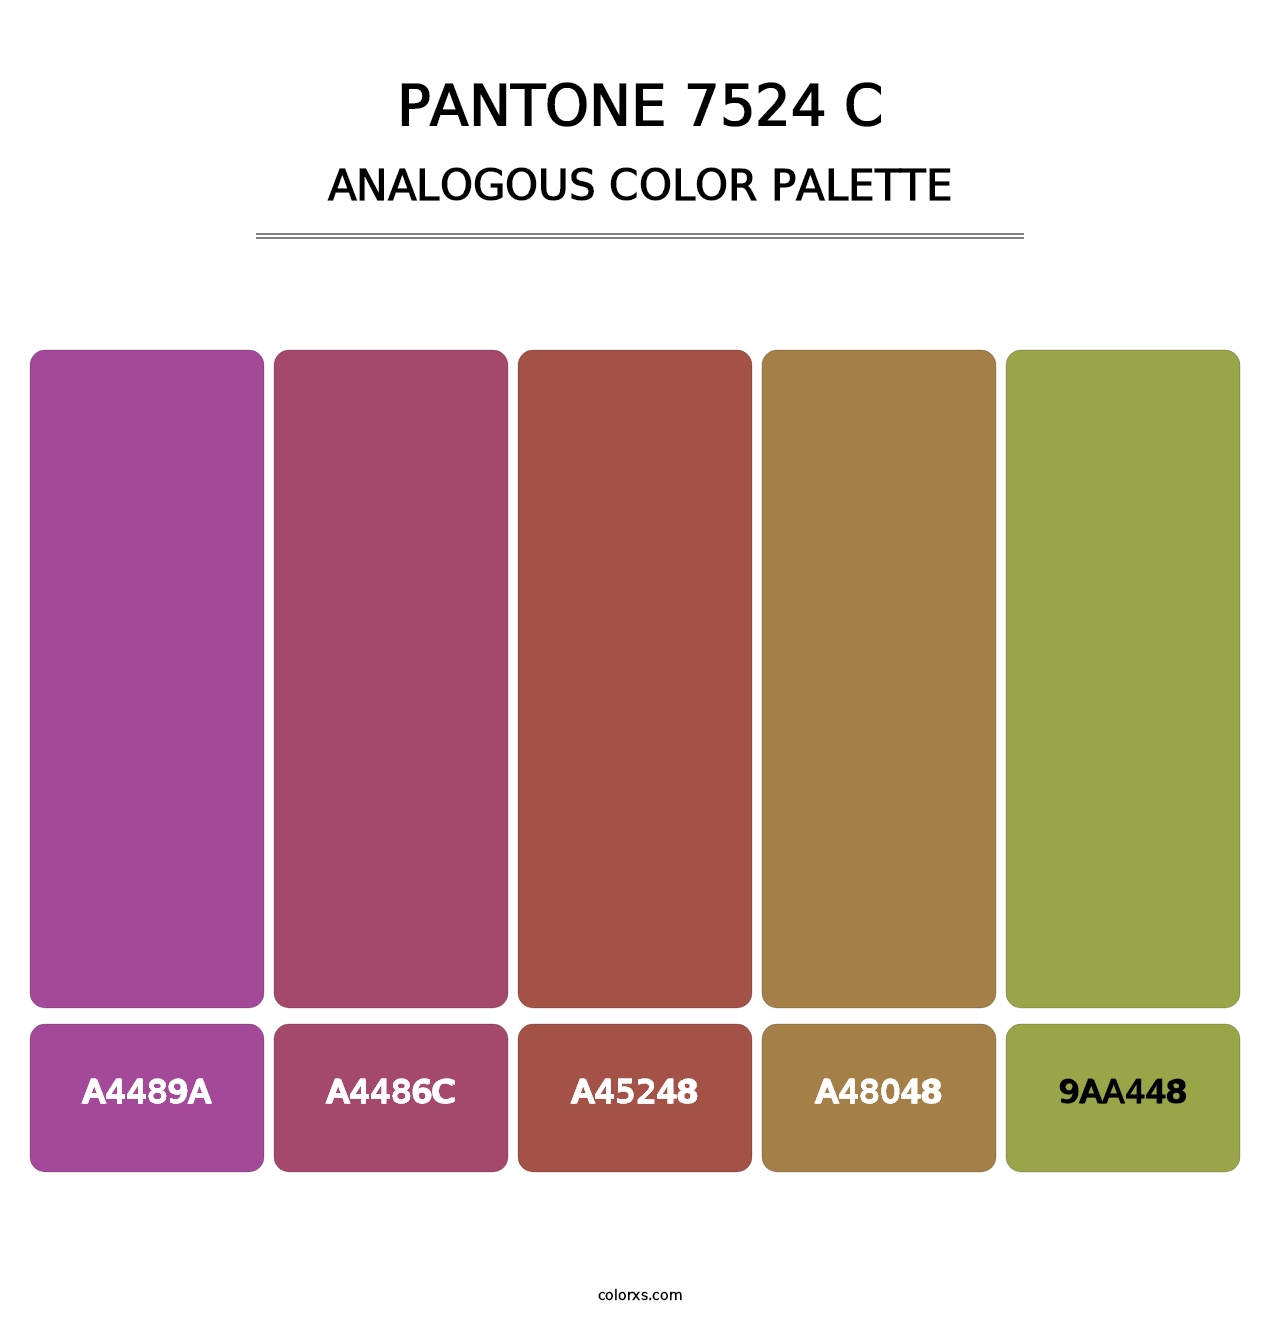 PANTONE 7524 C - Analogous Color Palette